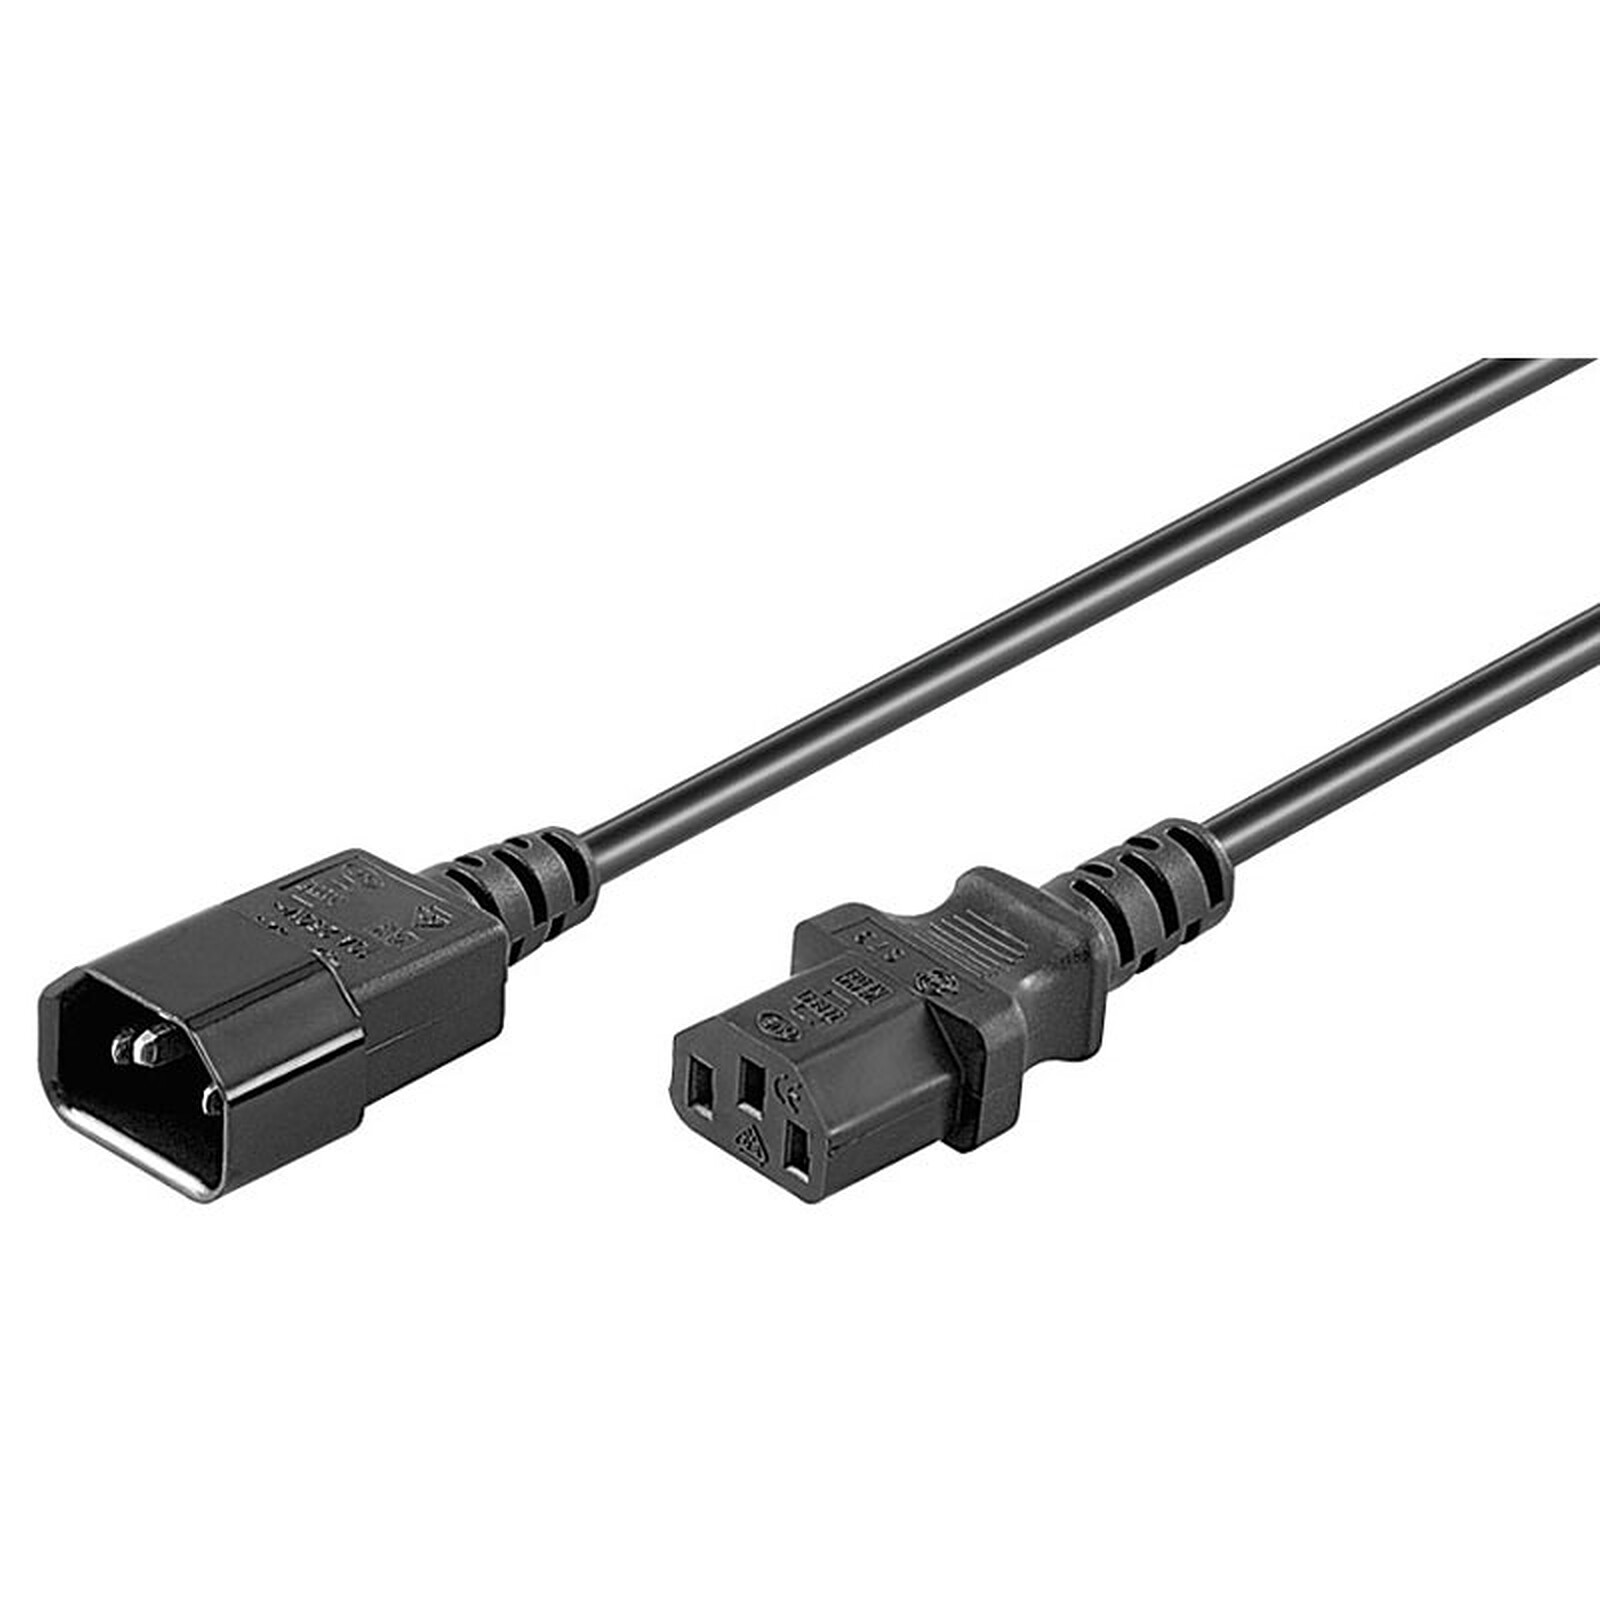 Rallonge d'alimentation pour PC, moniteur et onduleur (0.5 m) - (coloris  noir) - Câble Secteur - Garantie 3 ans LDLC